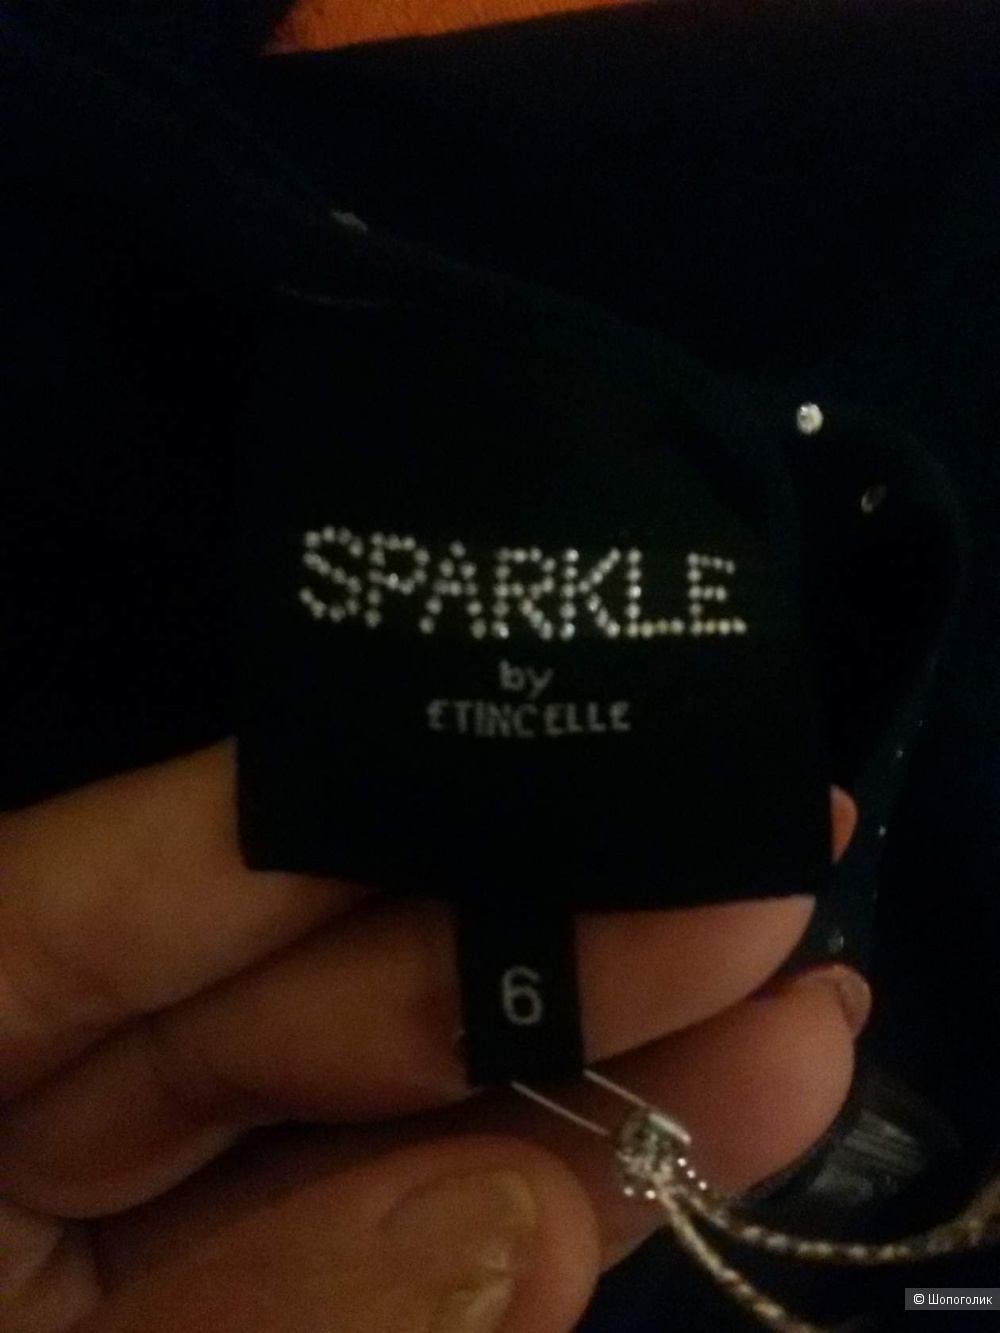 Джемпер Sparkle by Etincelle 52-54 размер